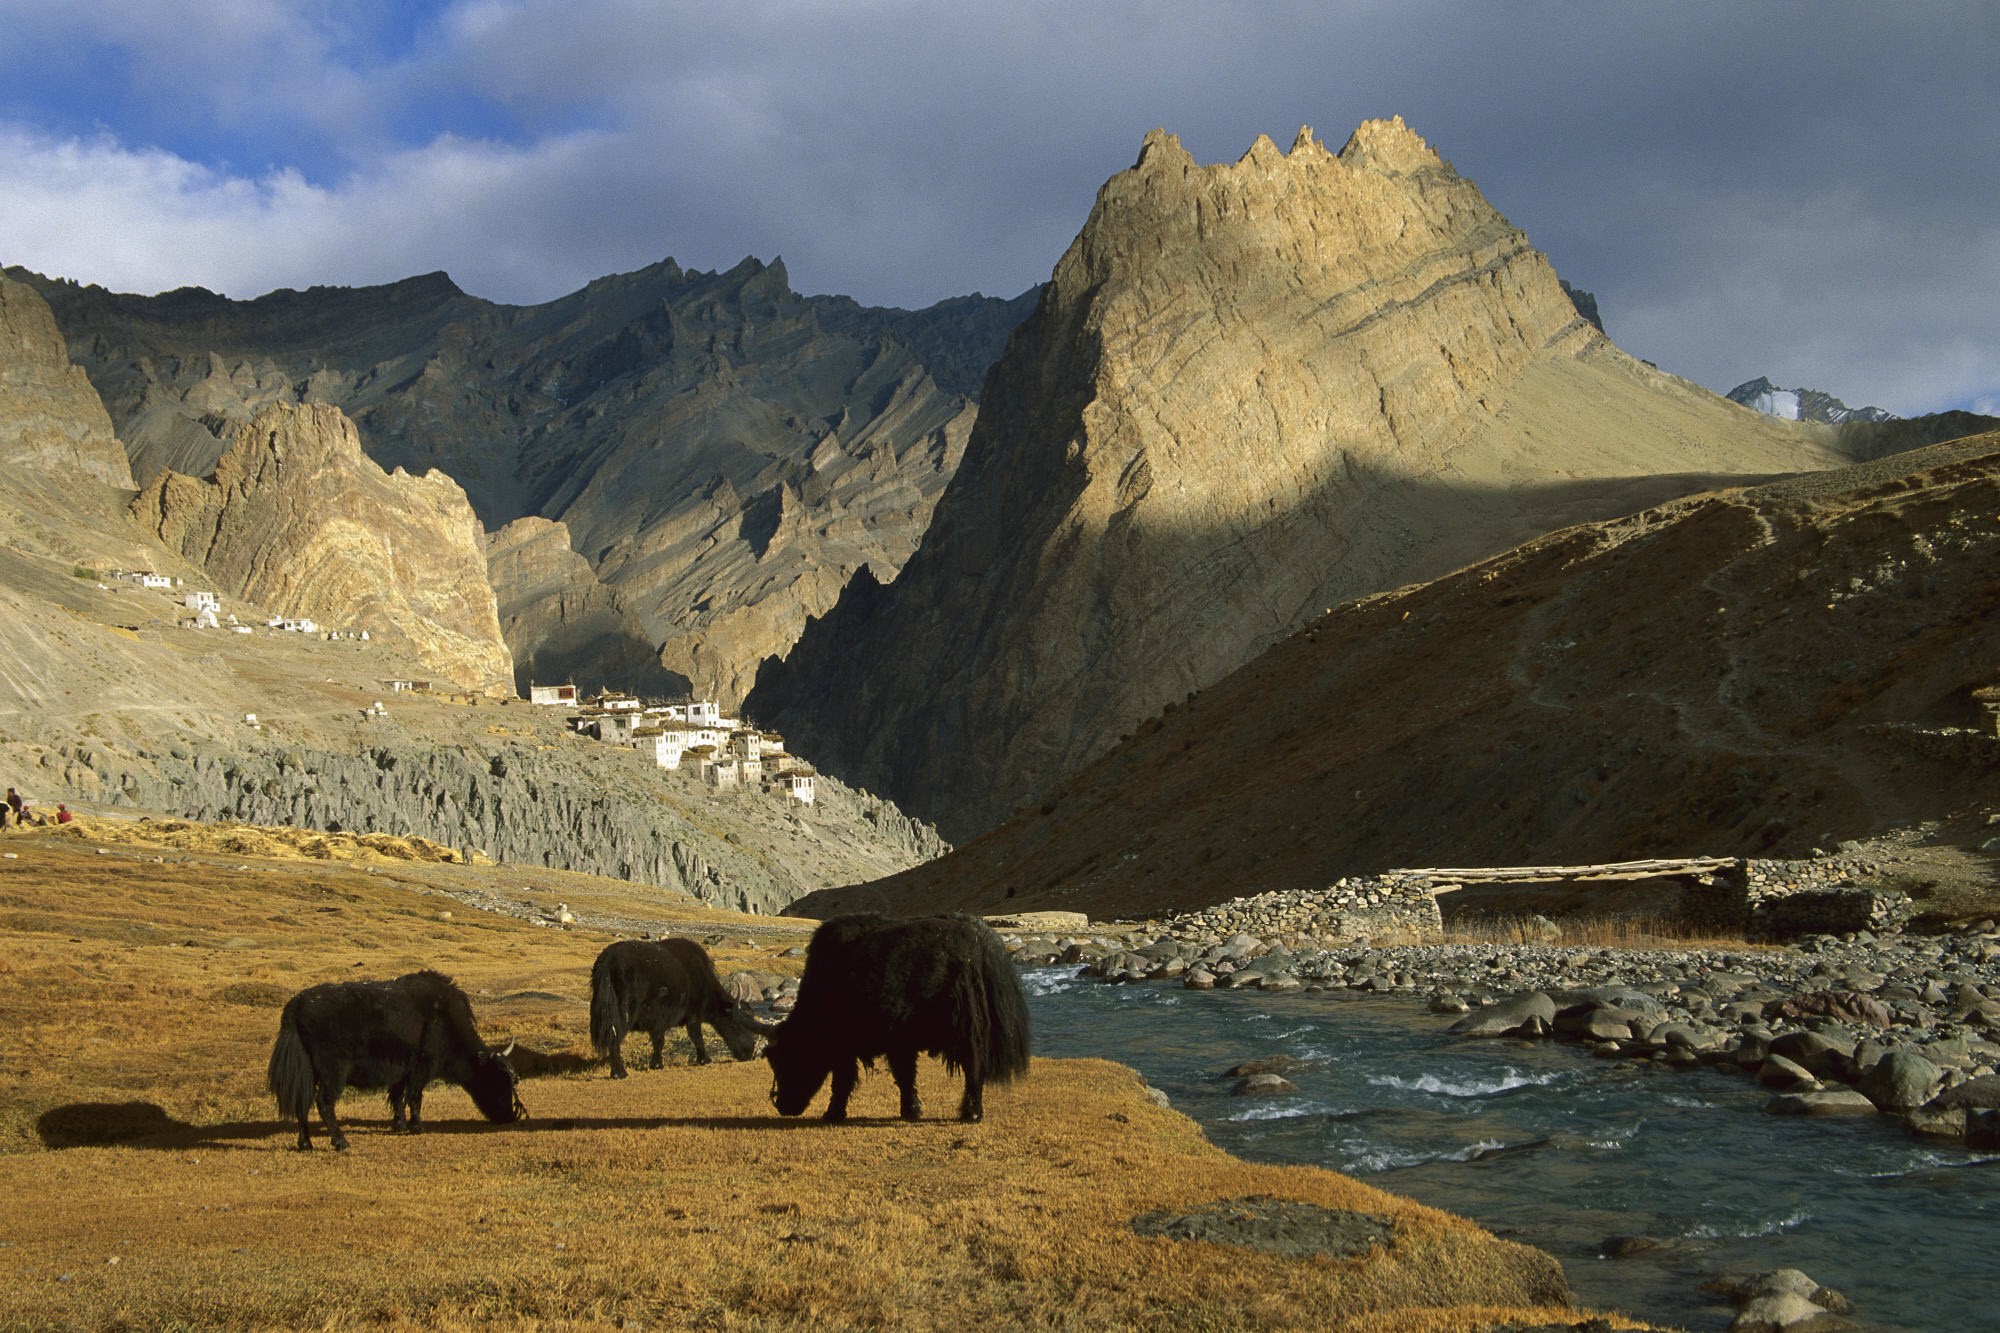 General 2000x1333 mountains wildlife animals mammals rocks nature landscape